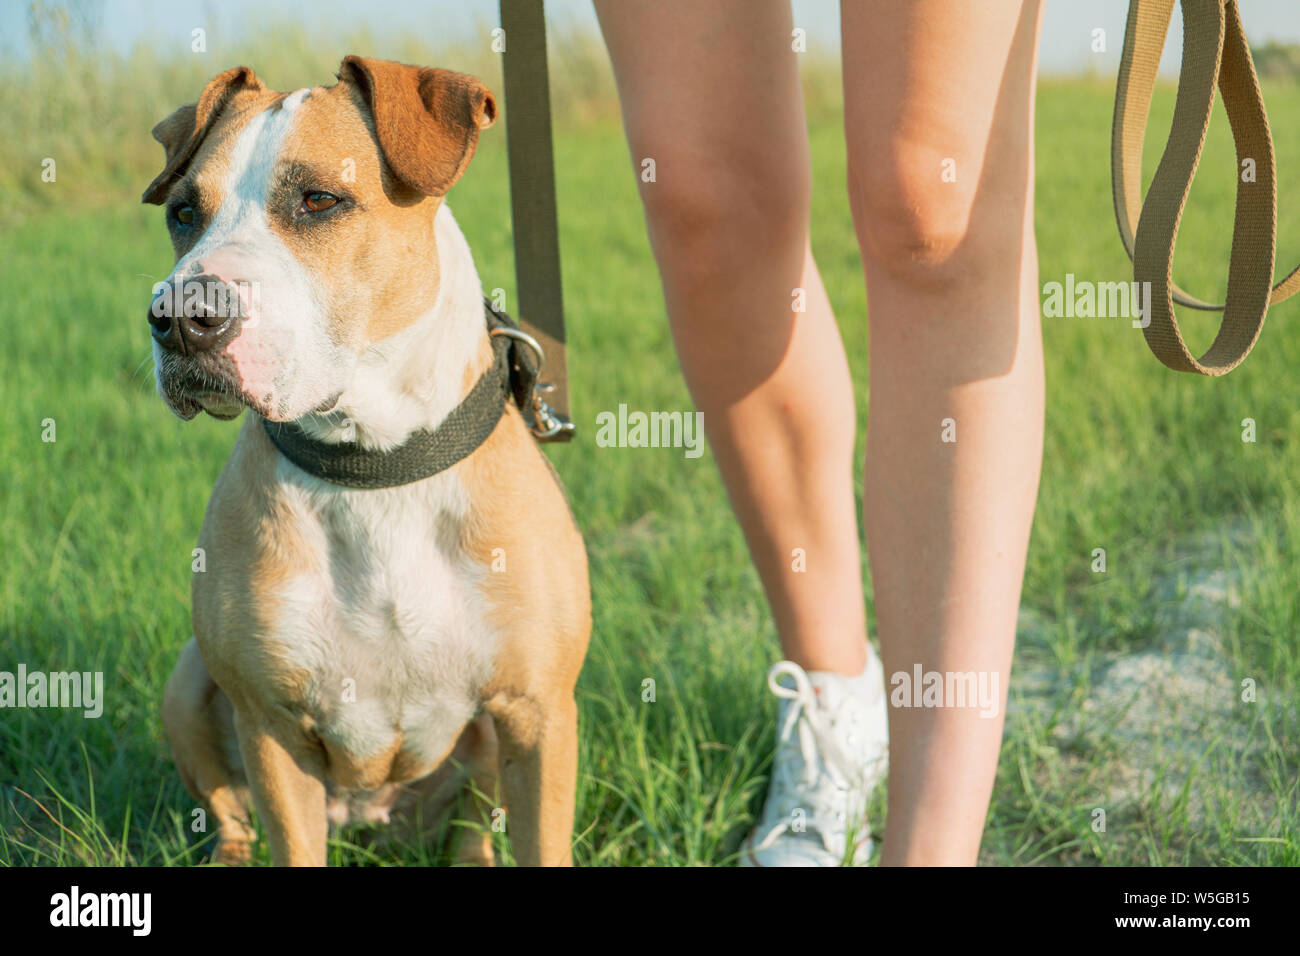 Gehorsamen Hund sitzt durch den Eigentümer an. Staffordshire Terrier und eine weibliche Person in einem Feld oder Park Stockfoto